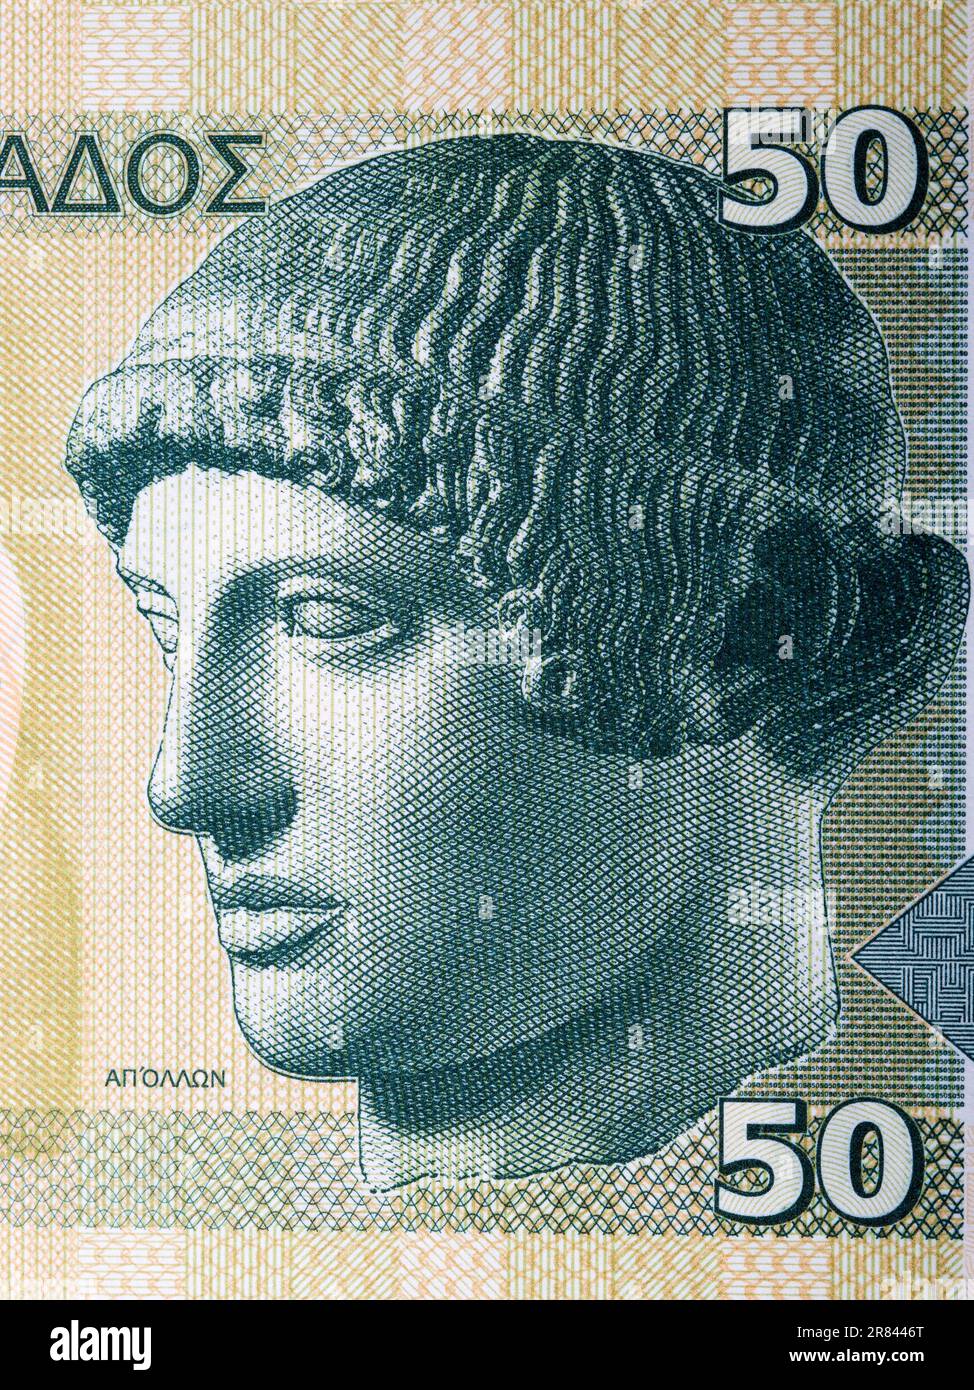 Scultura Apollo dal denaro greco - Drachma Foto Stock